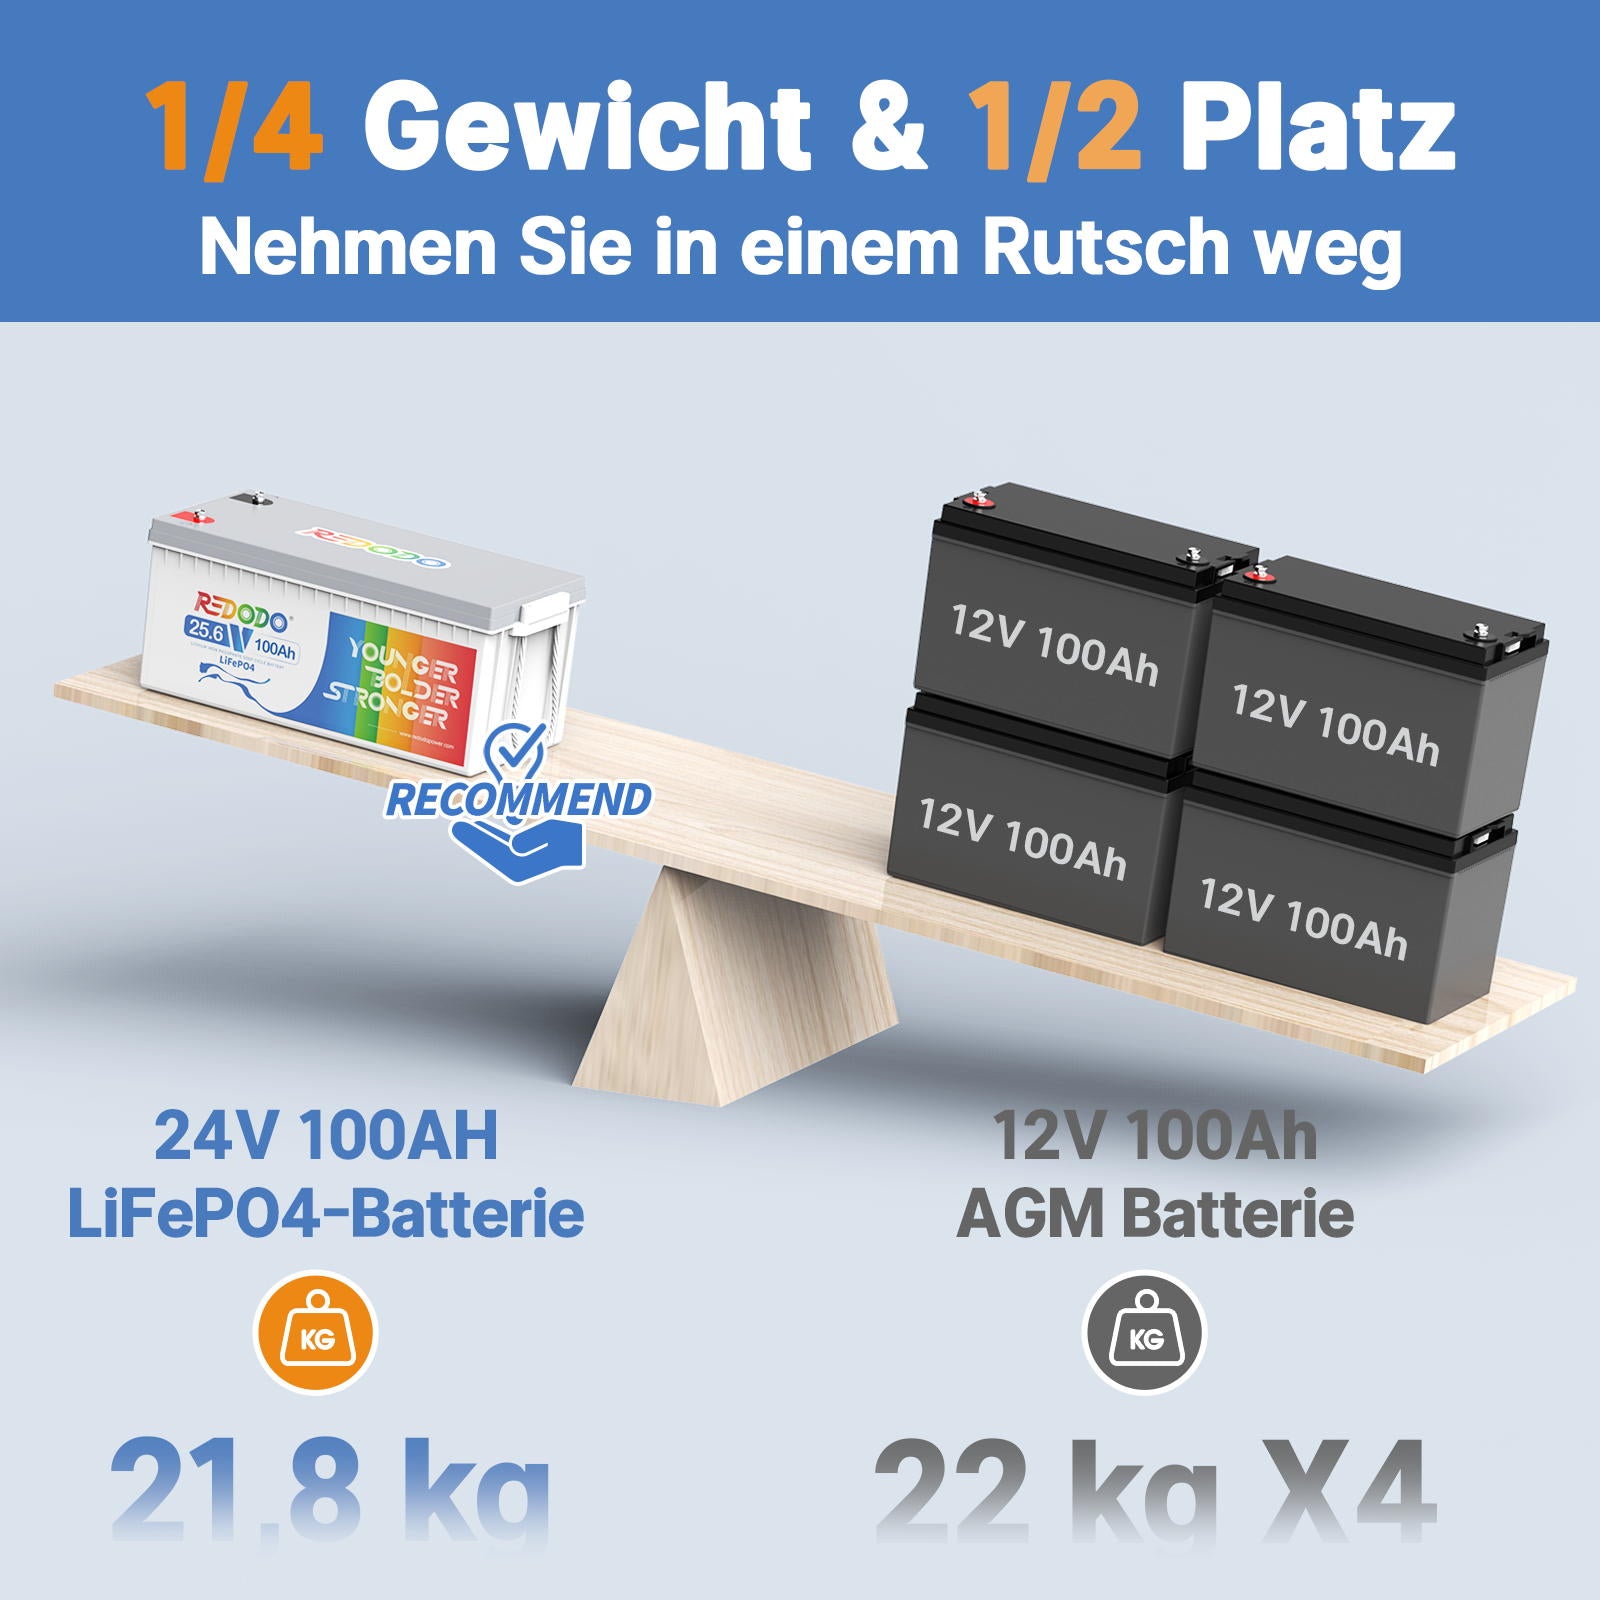 Befreiung von 19% MwSt - Redodo 24V 100Ah Deep Cycle LiFePO4 Batterie - Nur  für deutsche und österreichische Wohngebäude gelten